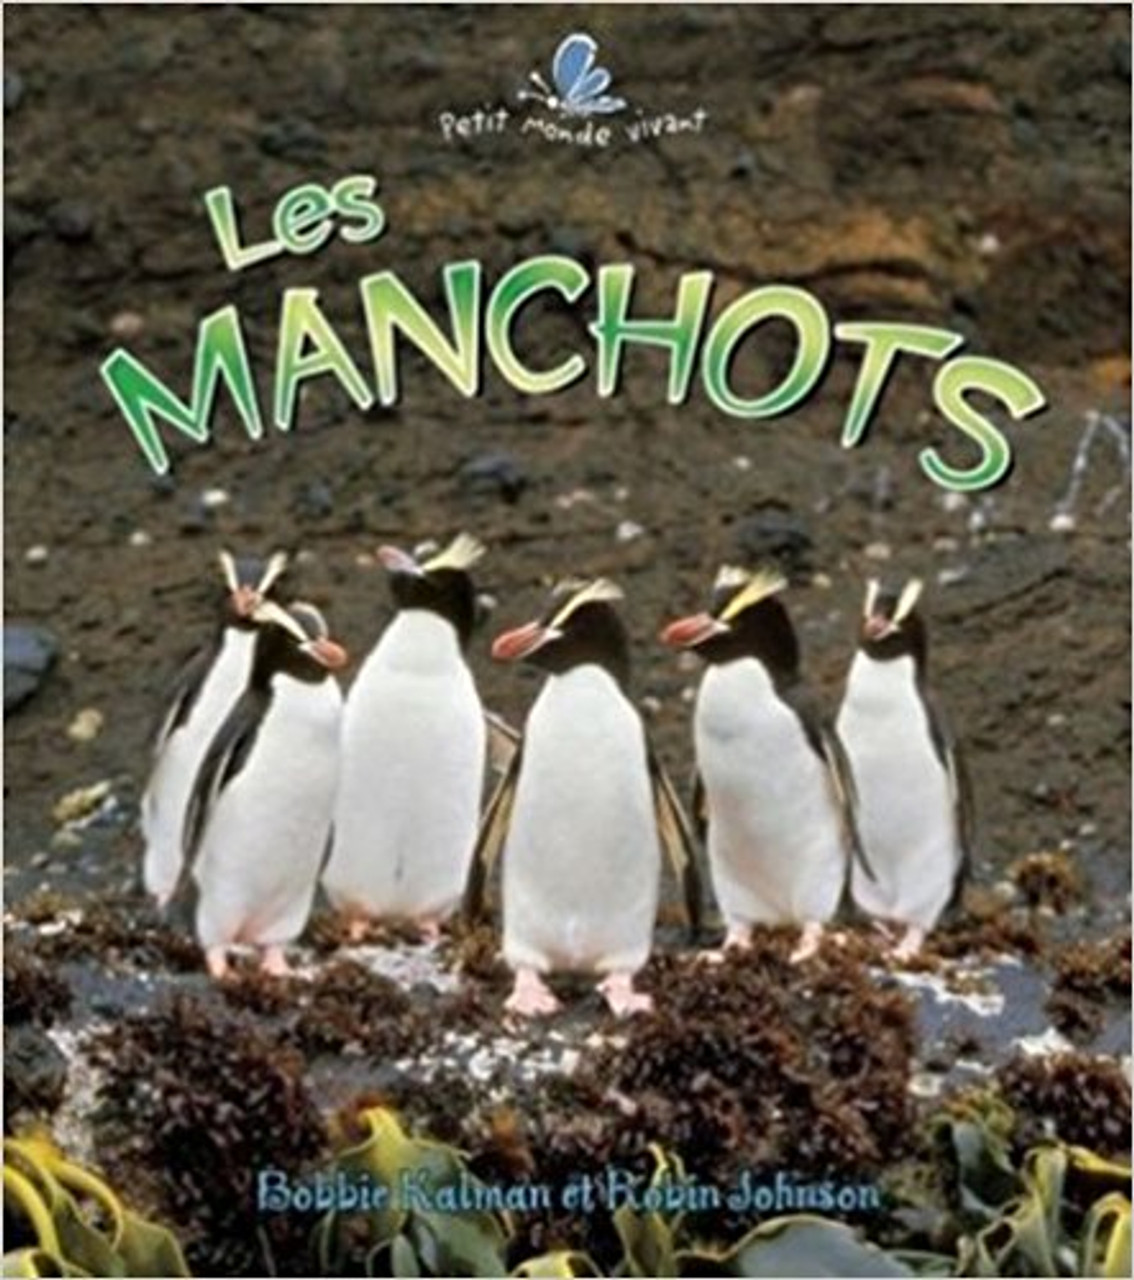 Les Manchots by Bobbie Kalman